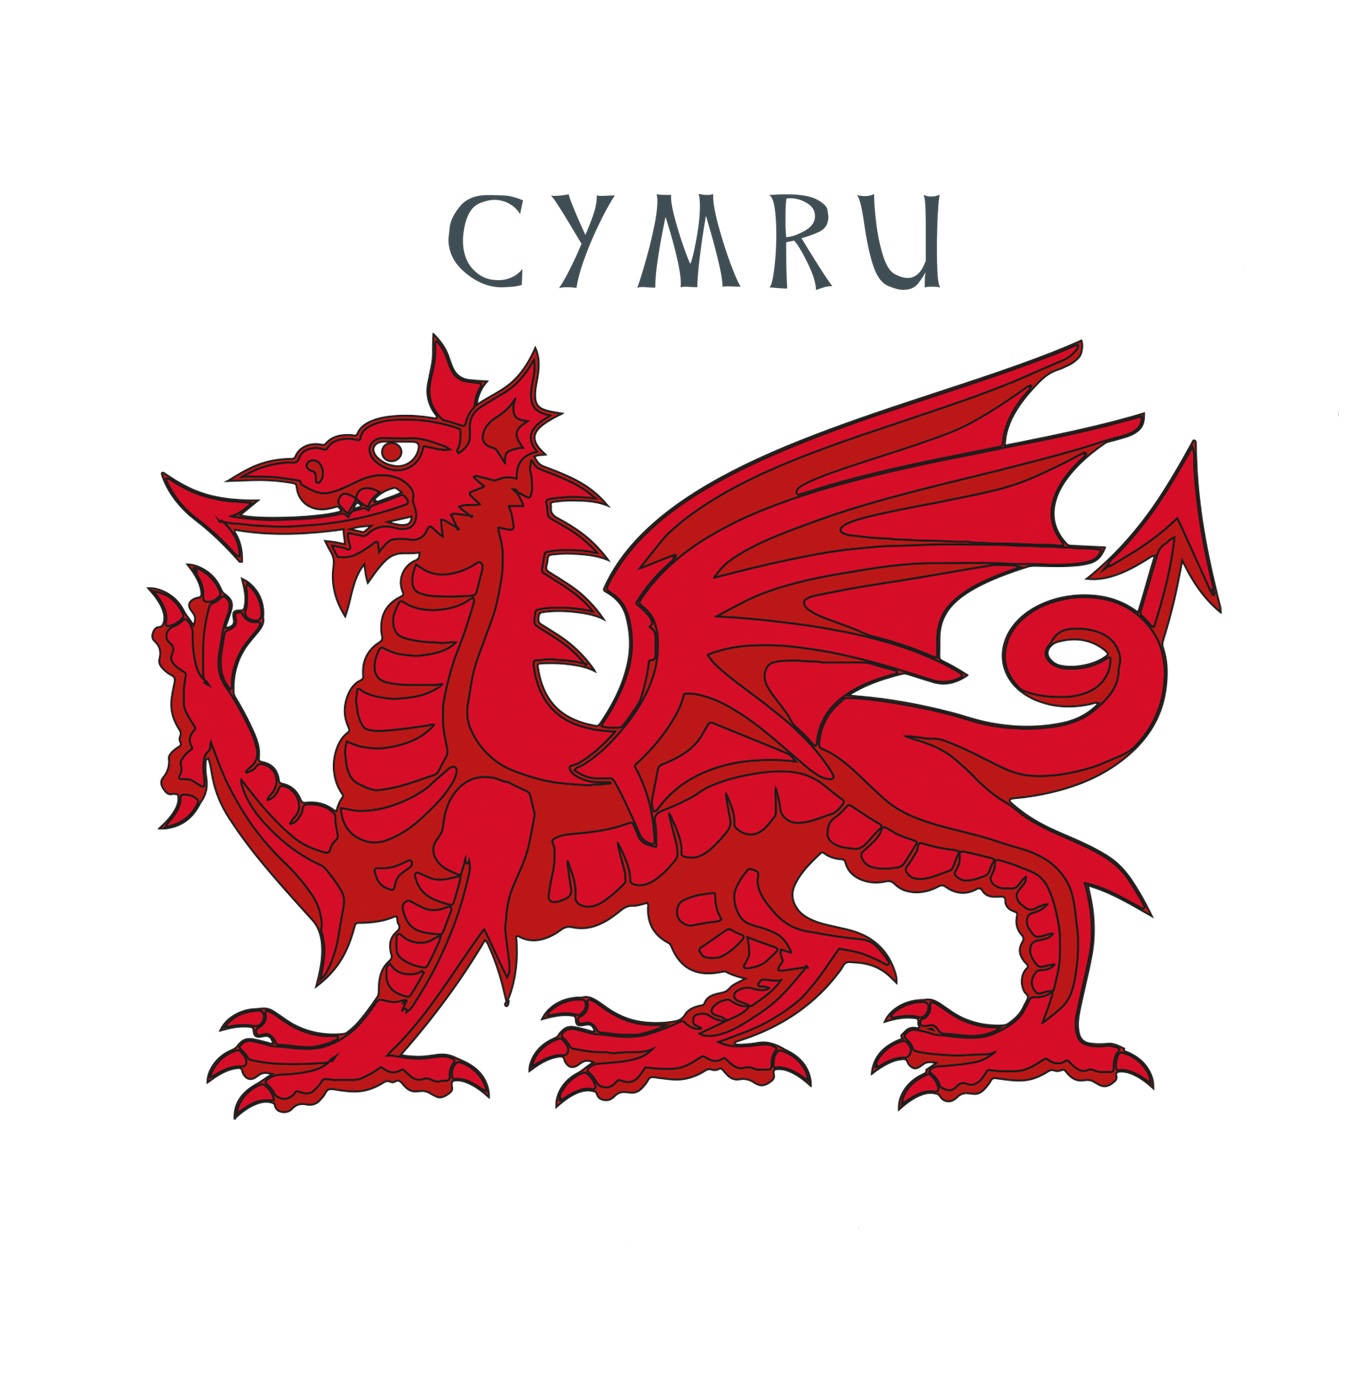 Cymru DragonZ